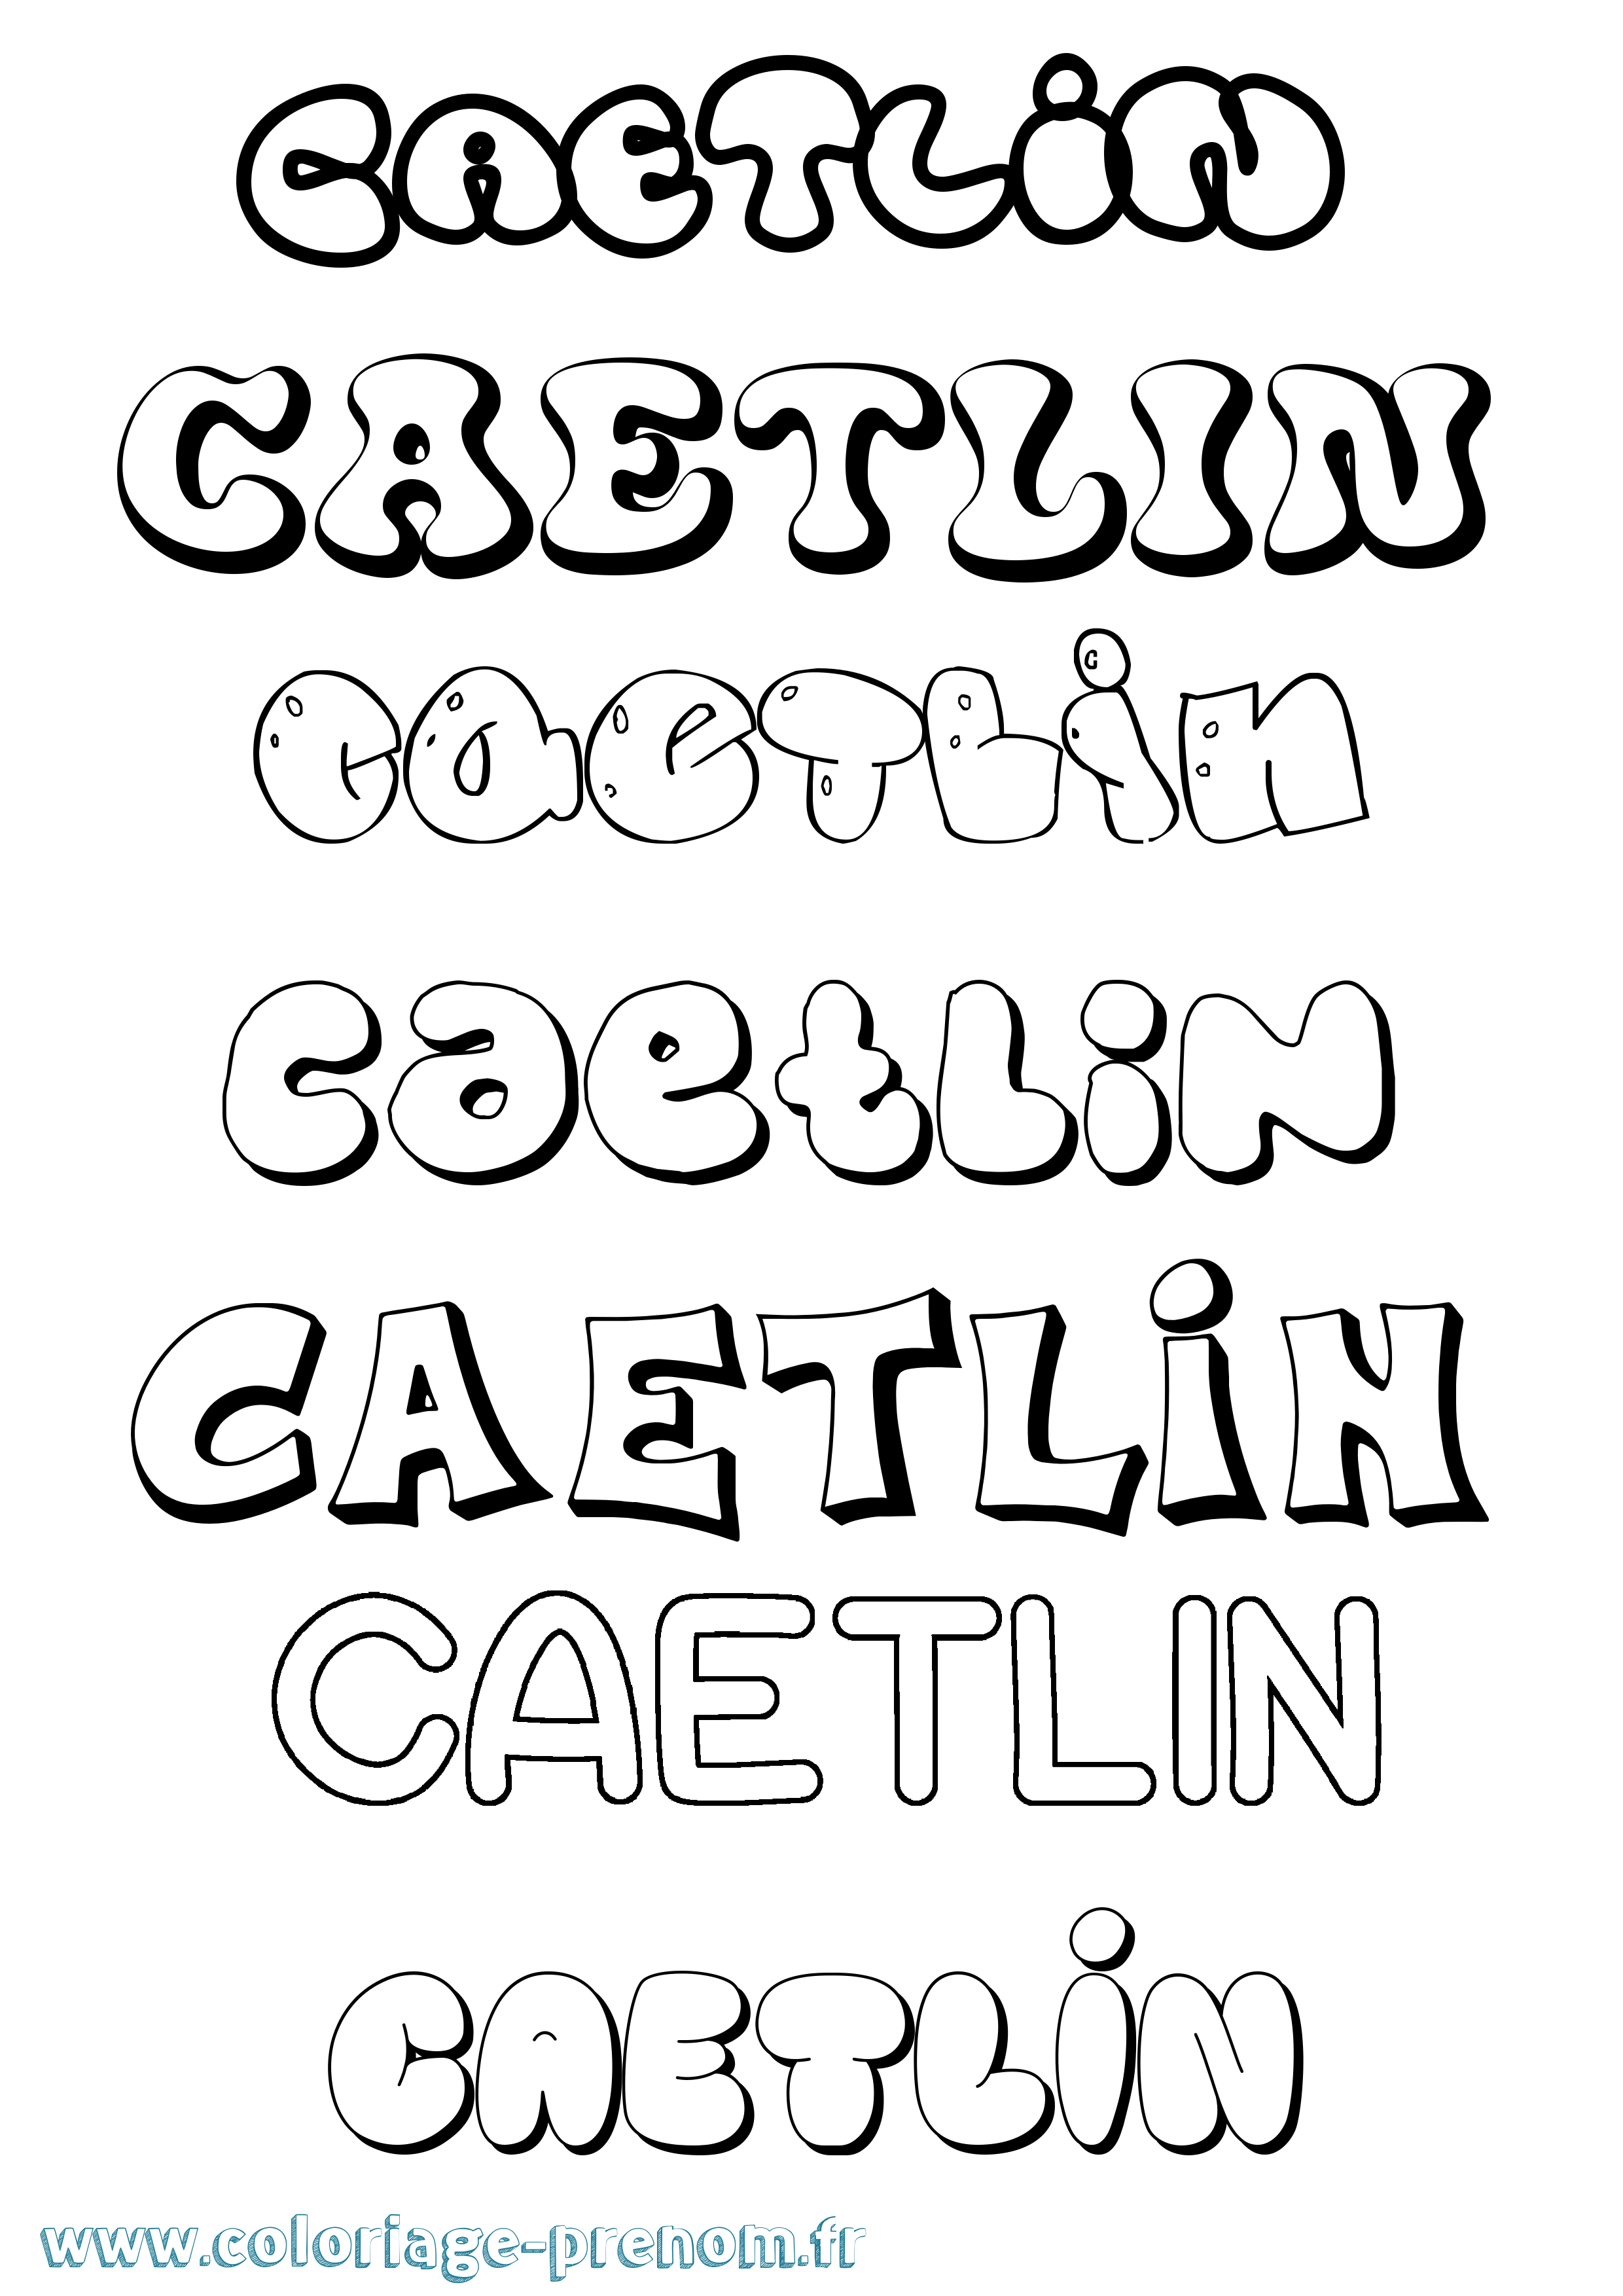 Coloriage prénom Caetlin Bubble